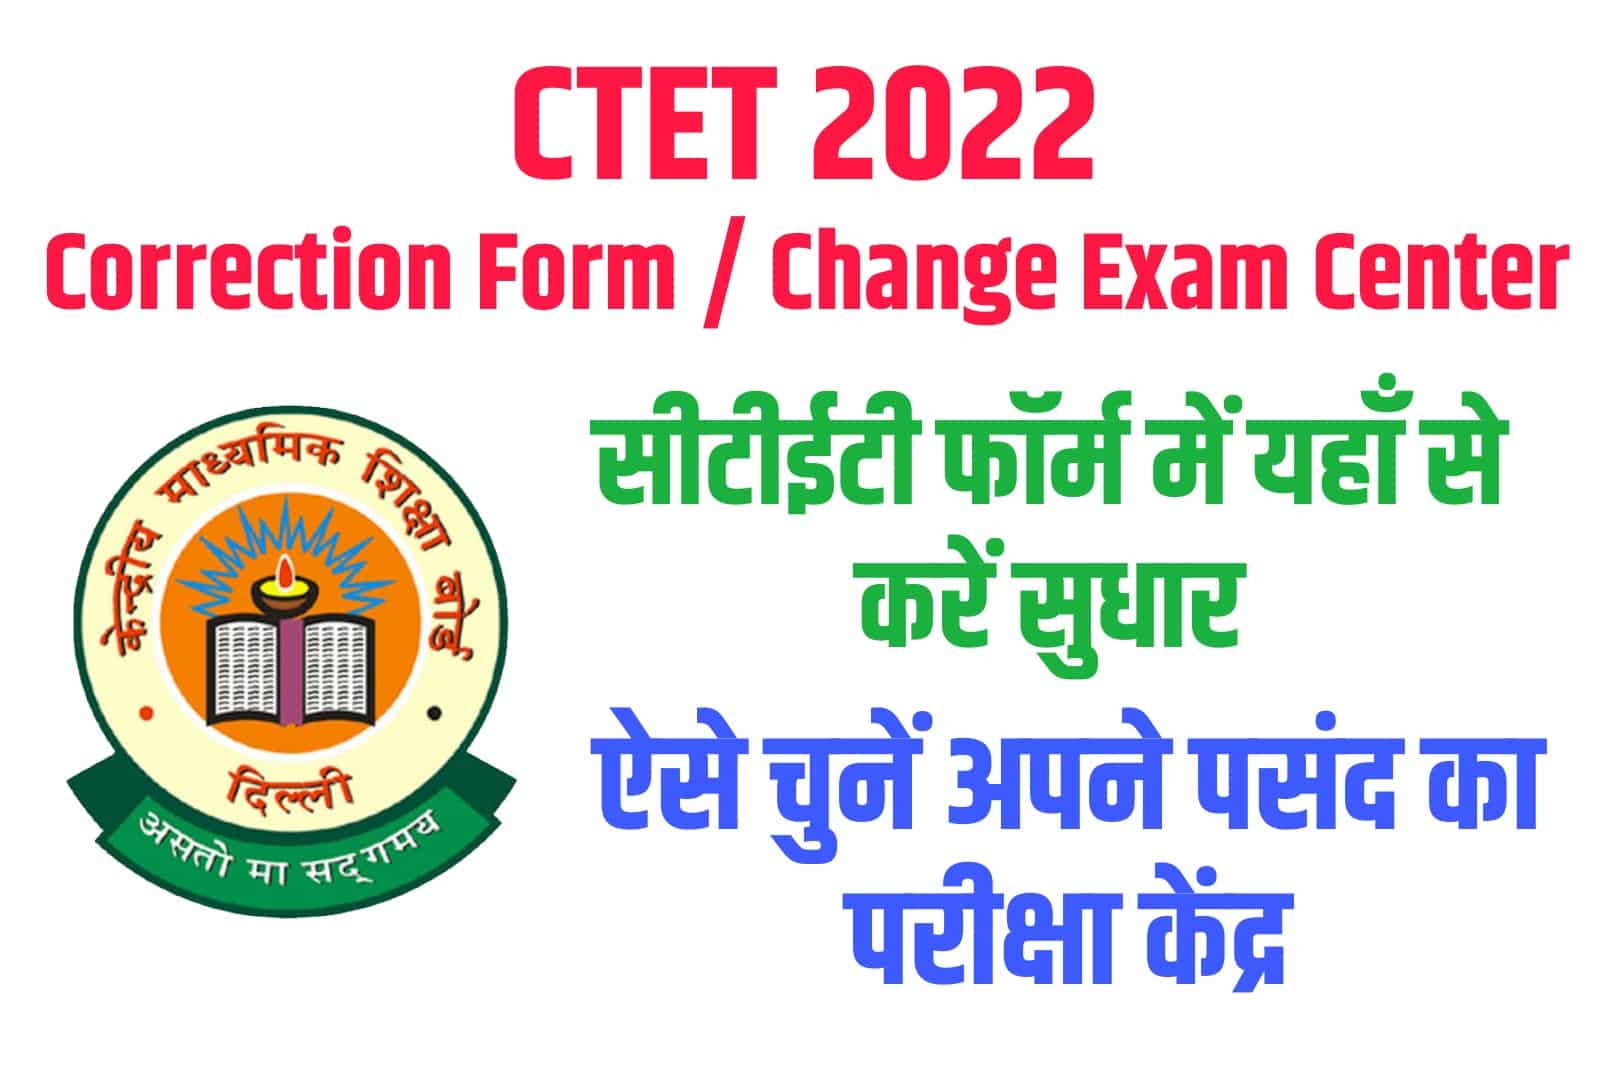 CTET Correction Form / Change Exam Center 2022 : सीटीईटी फॉर्म में यहाँ से करें सुधार और ऐसे चुनें अपने पसंद का परीक्षा केंद्र